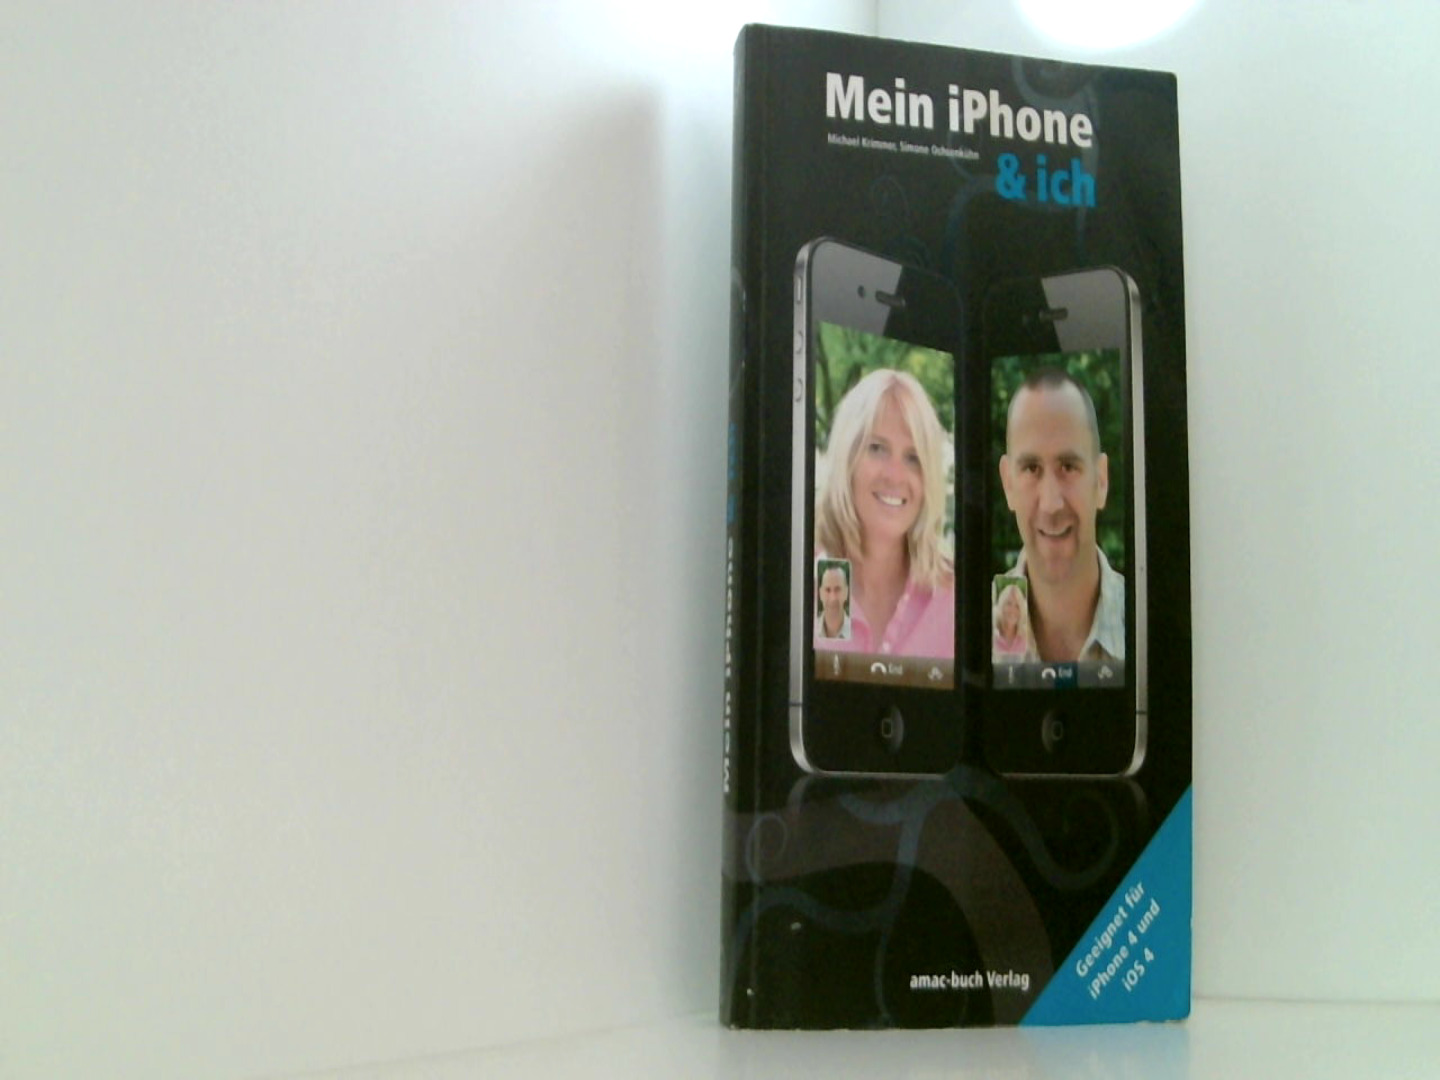 Mein iPhone & ich - Für iPhone 4 und iOS4  1. - Michael, Krimmer und Ochsenkühn Simone